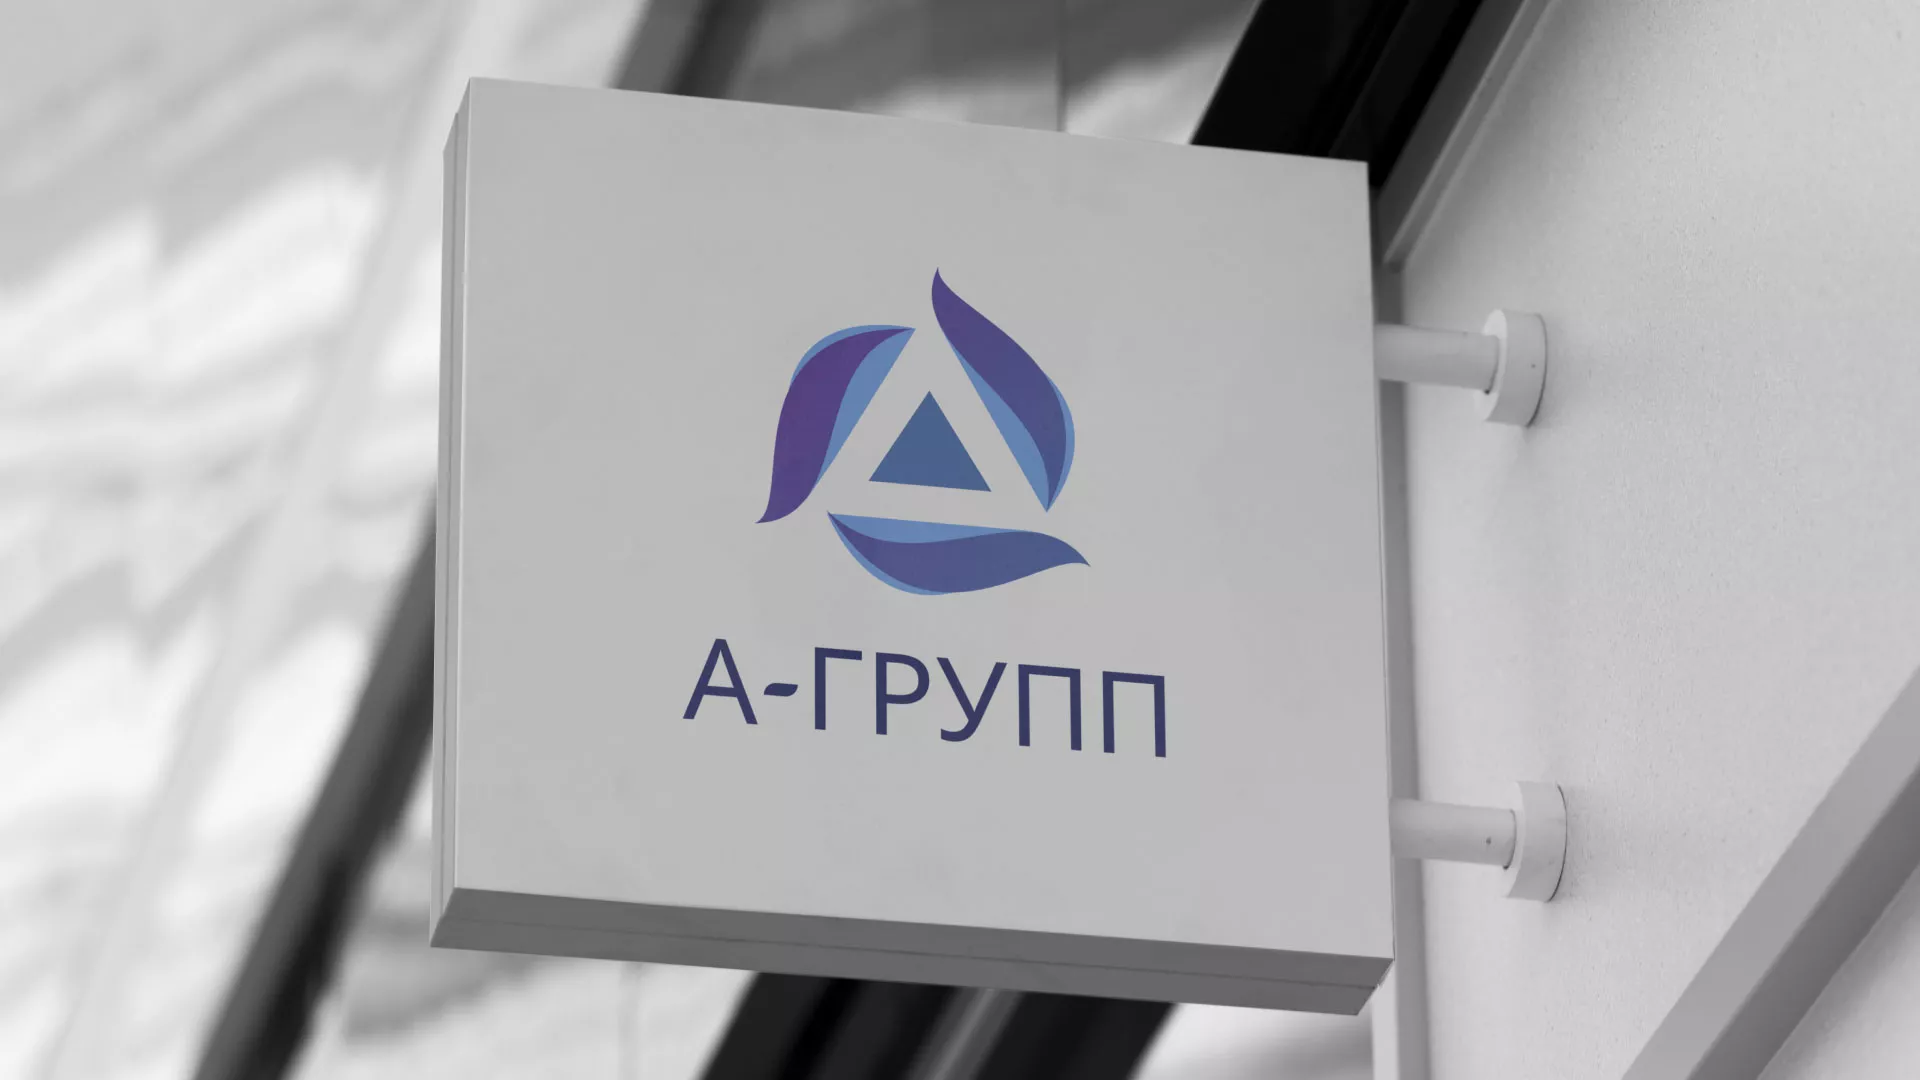 Создание логотипа компании «А-ГРУПП» в Урюпинске